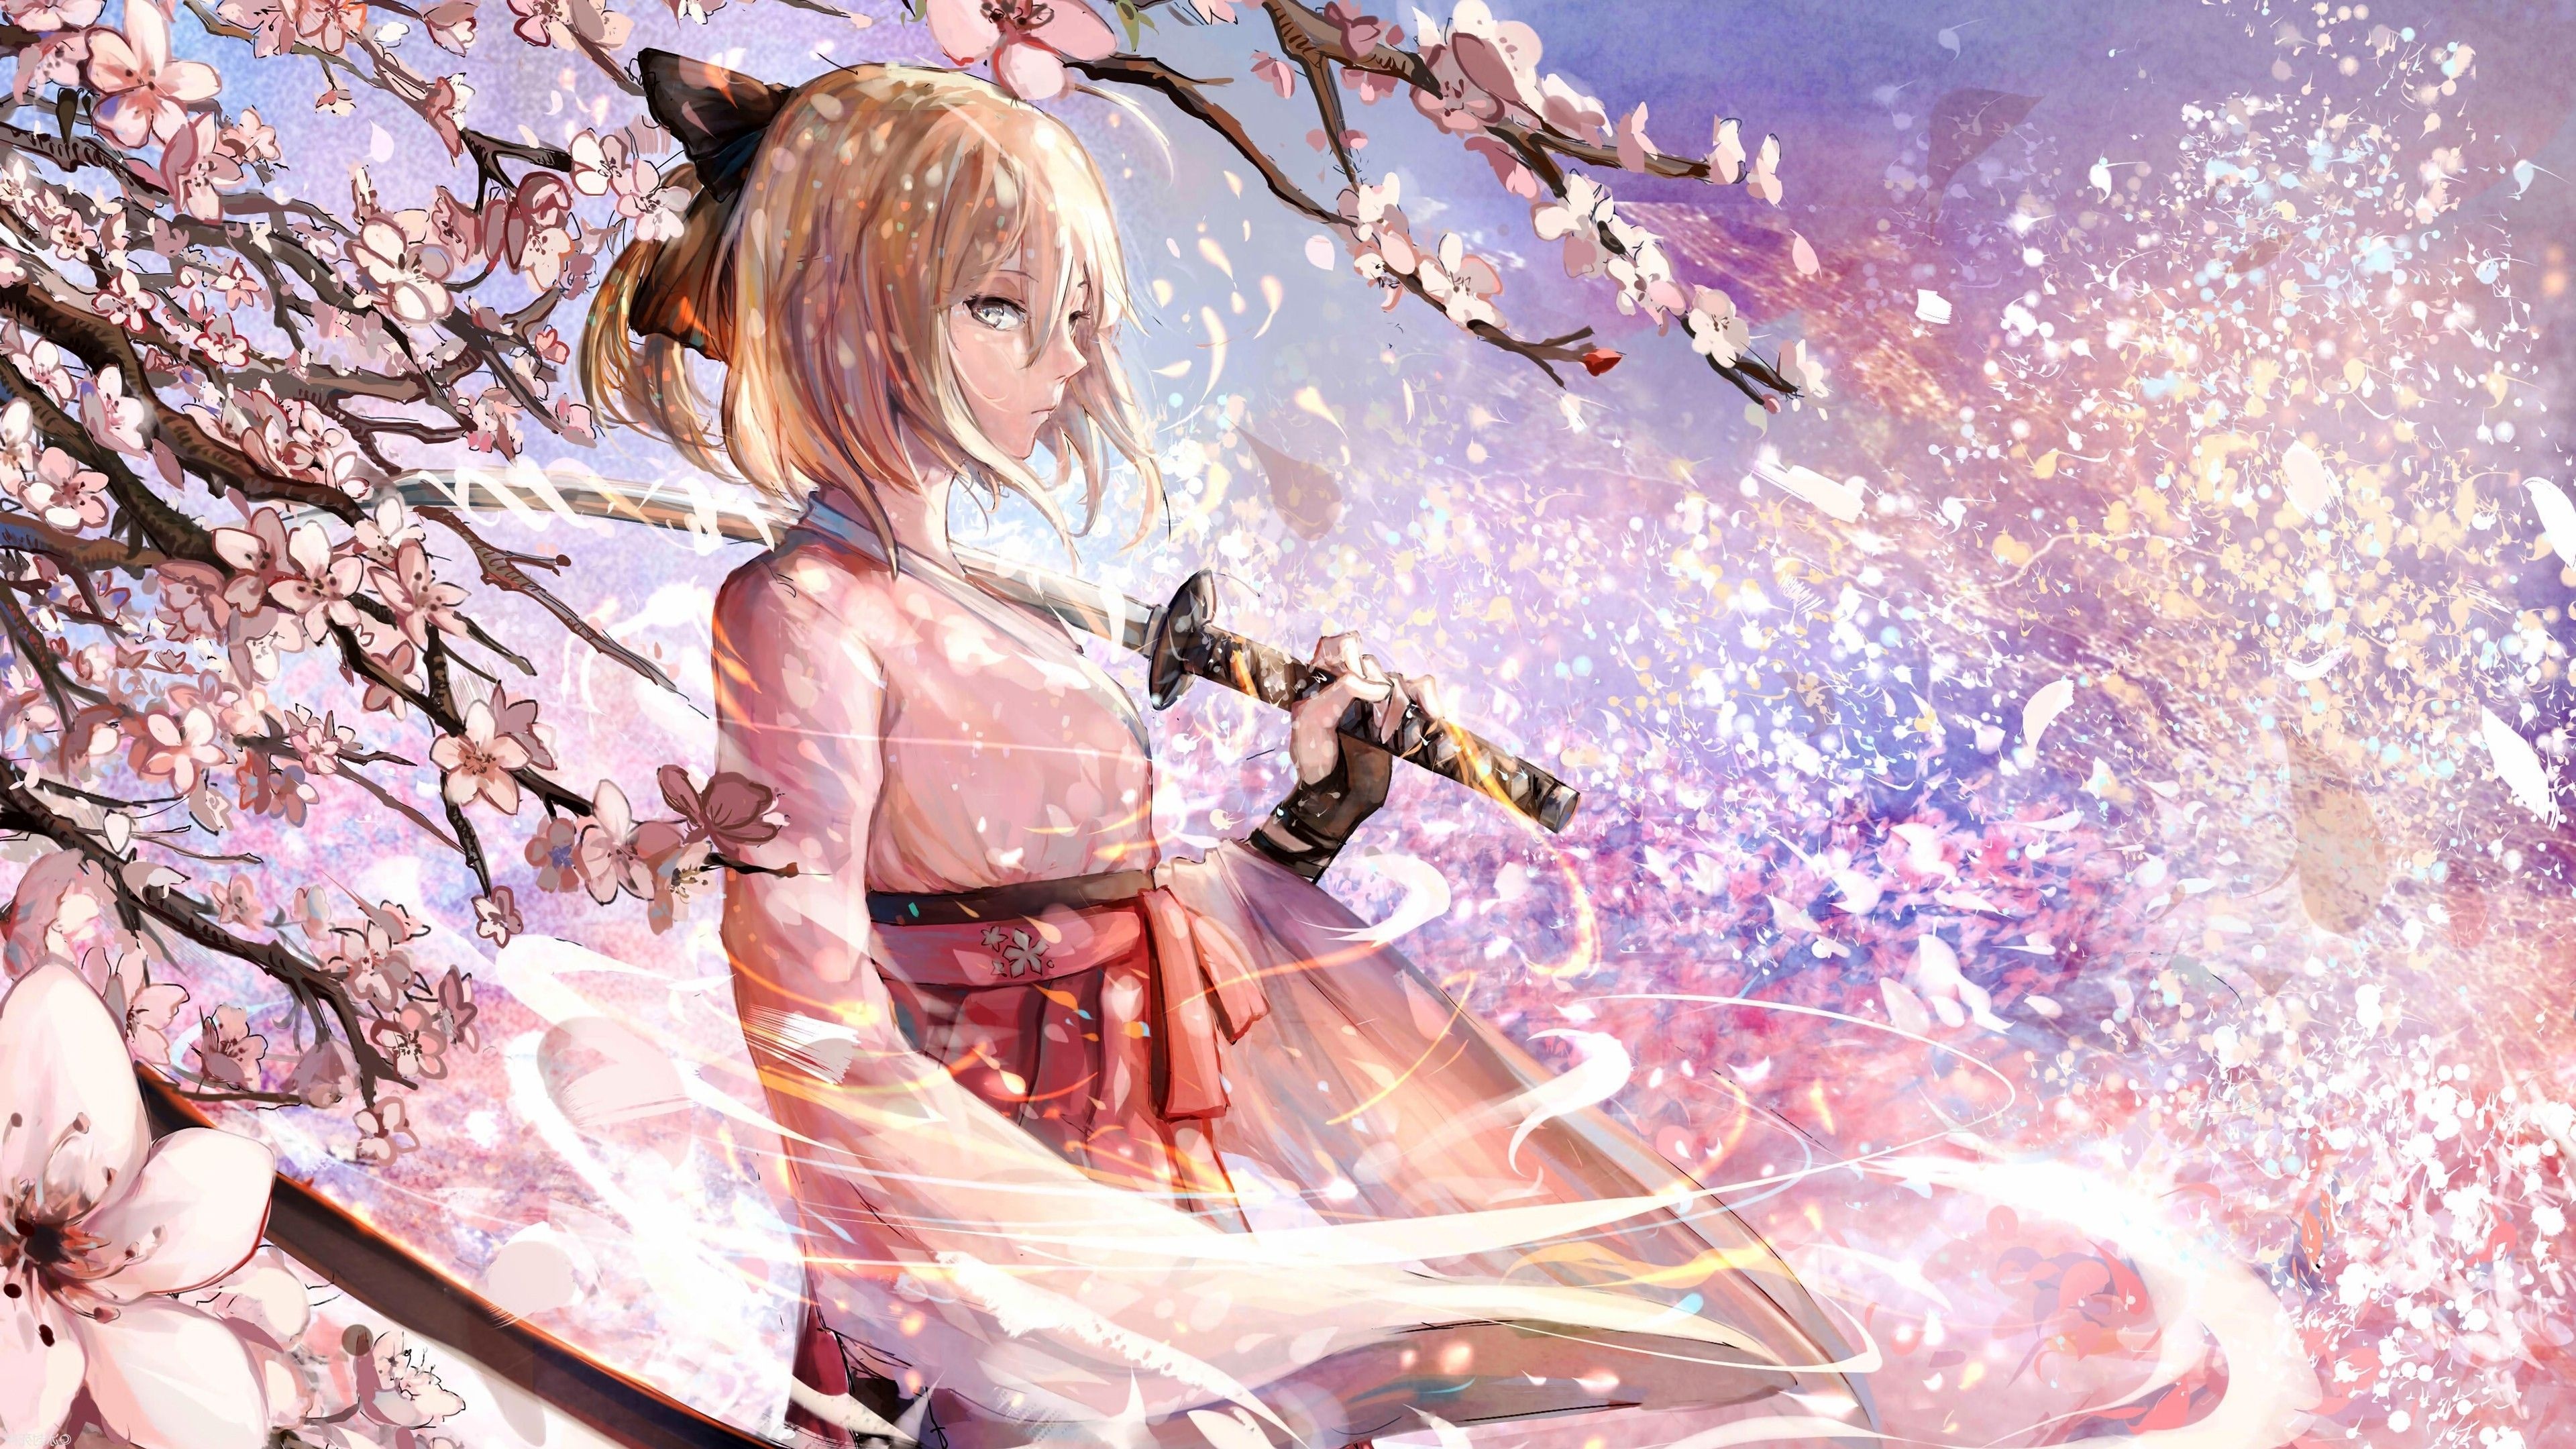 Anime Girl: Manga, Sword, Weapons, Warrior, Blossoms. 3840x2160 4K Wallpaper.